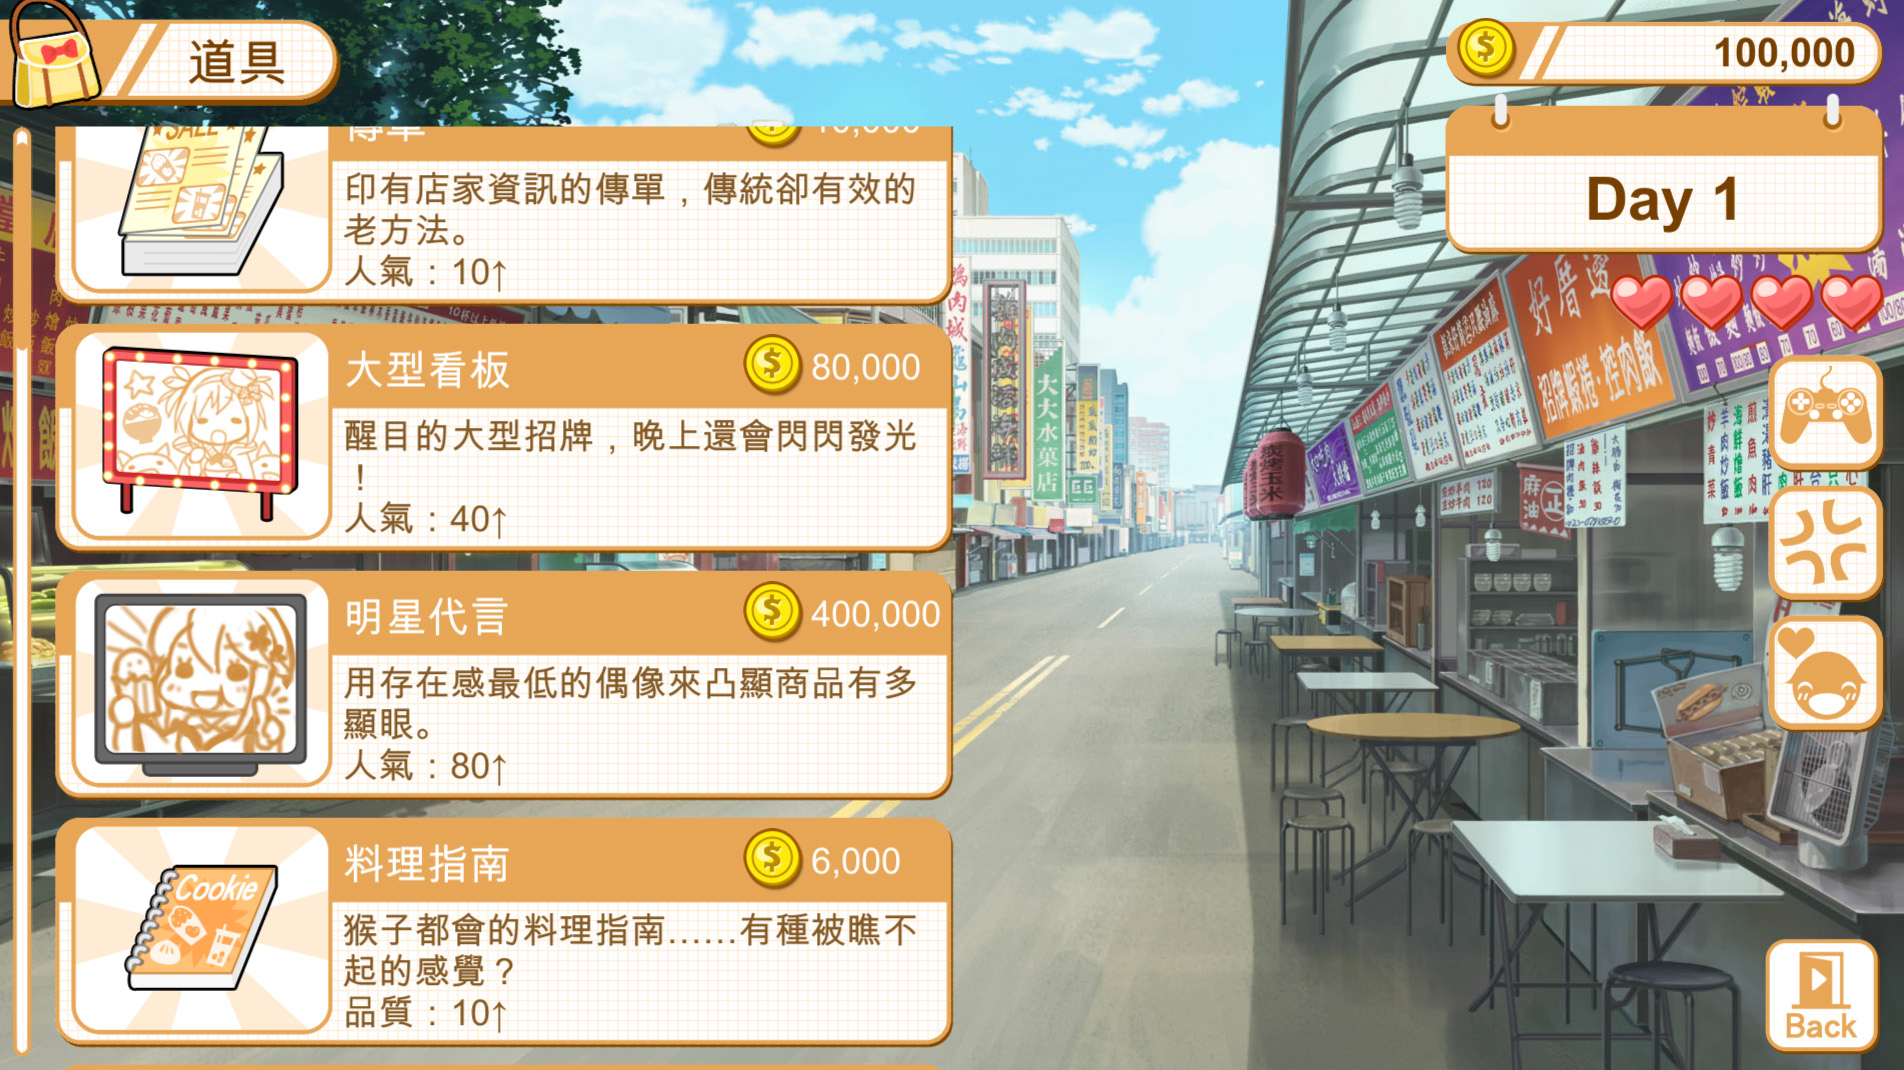 【经营SLG/中文】食用系少女 v1.08 Steam官方中文版【2.4G】